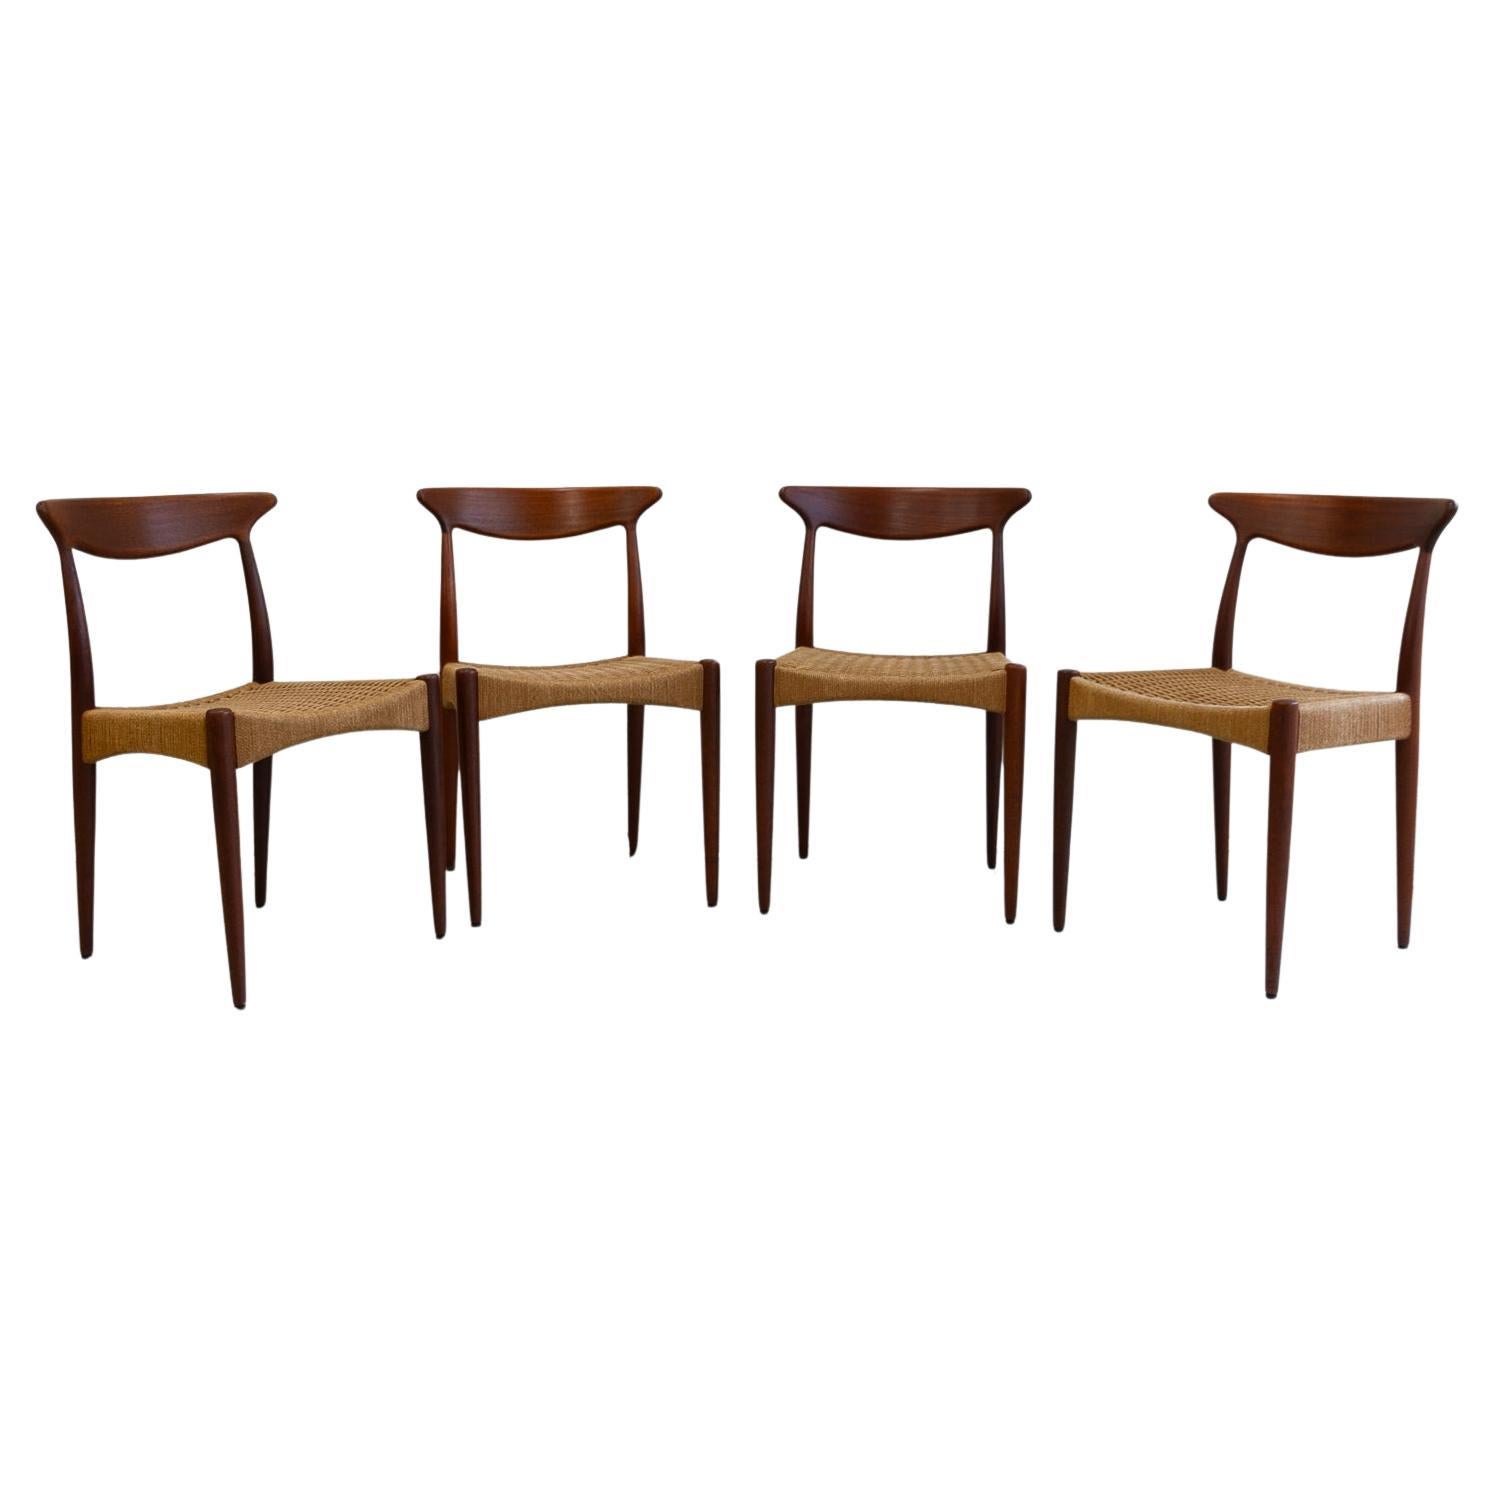 Danish Modern Teak Chairs by Arne Hovmand-Olsen for Mogens Kold, 1950s. Set of 4